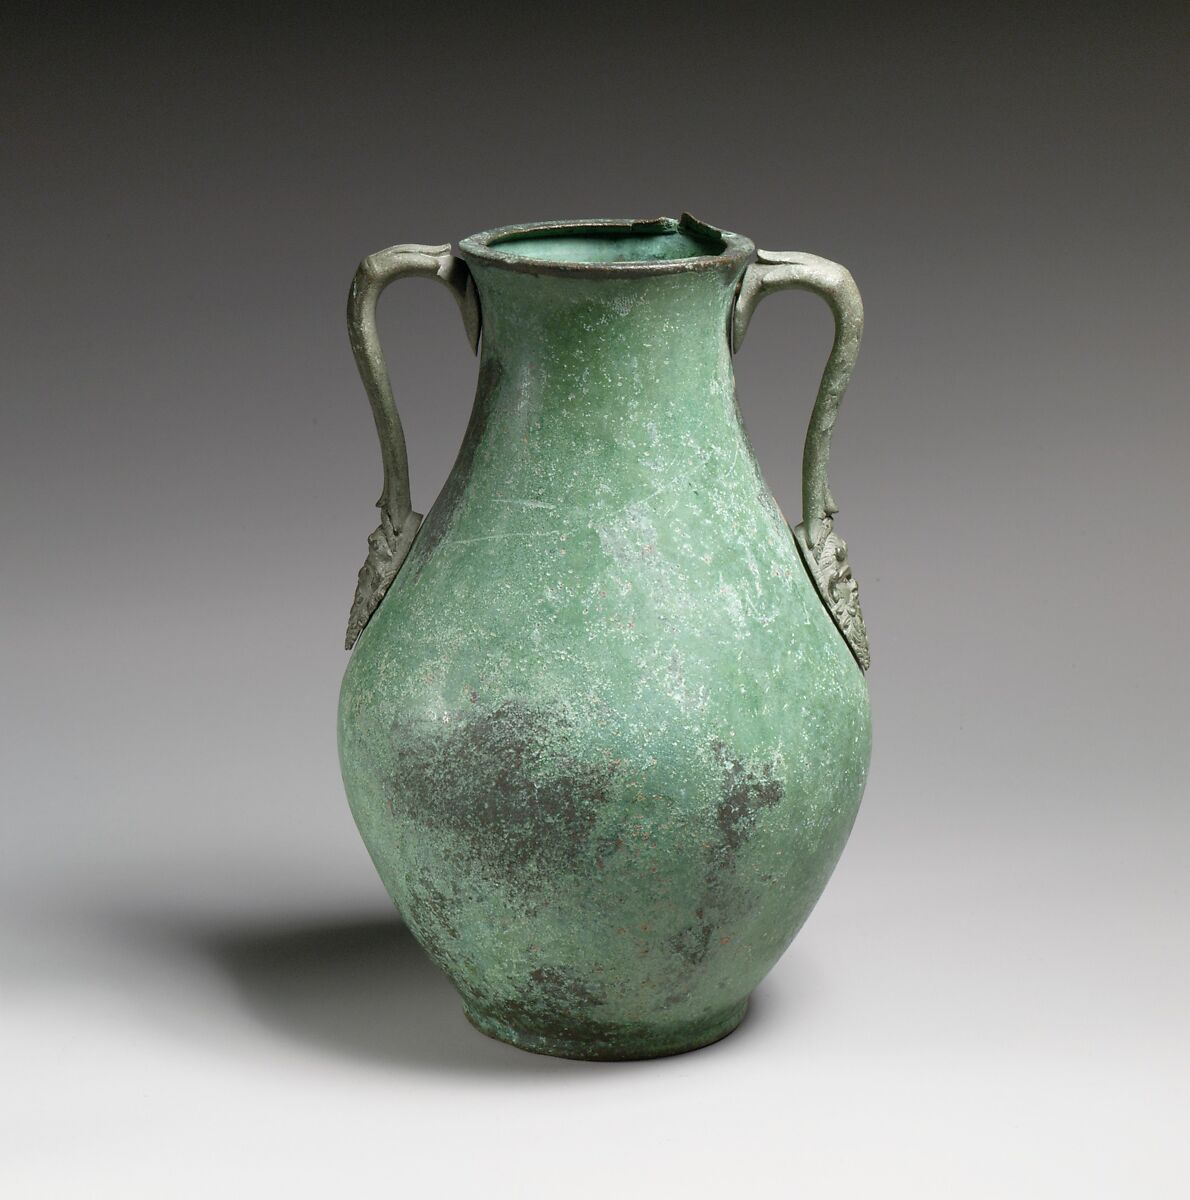 Bronze amphora (two-handled jar), Bronze, Roman 